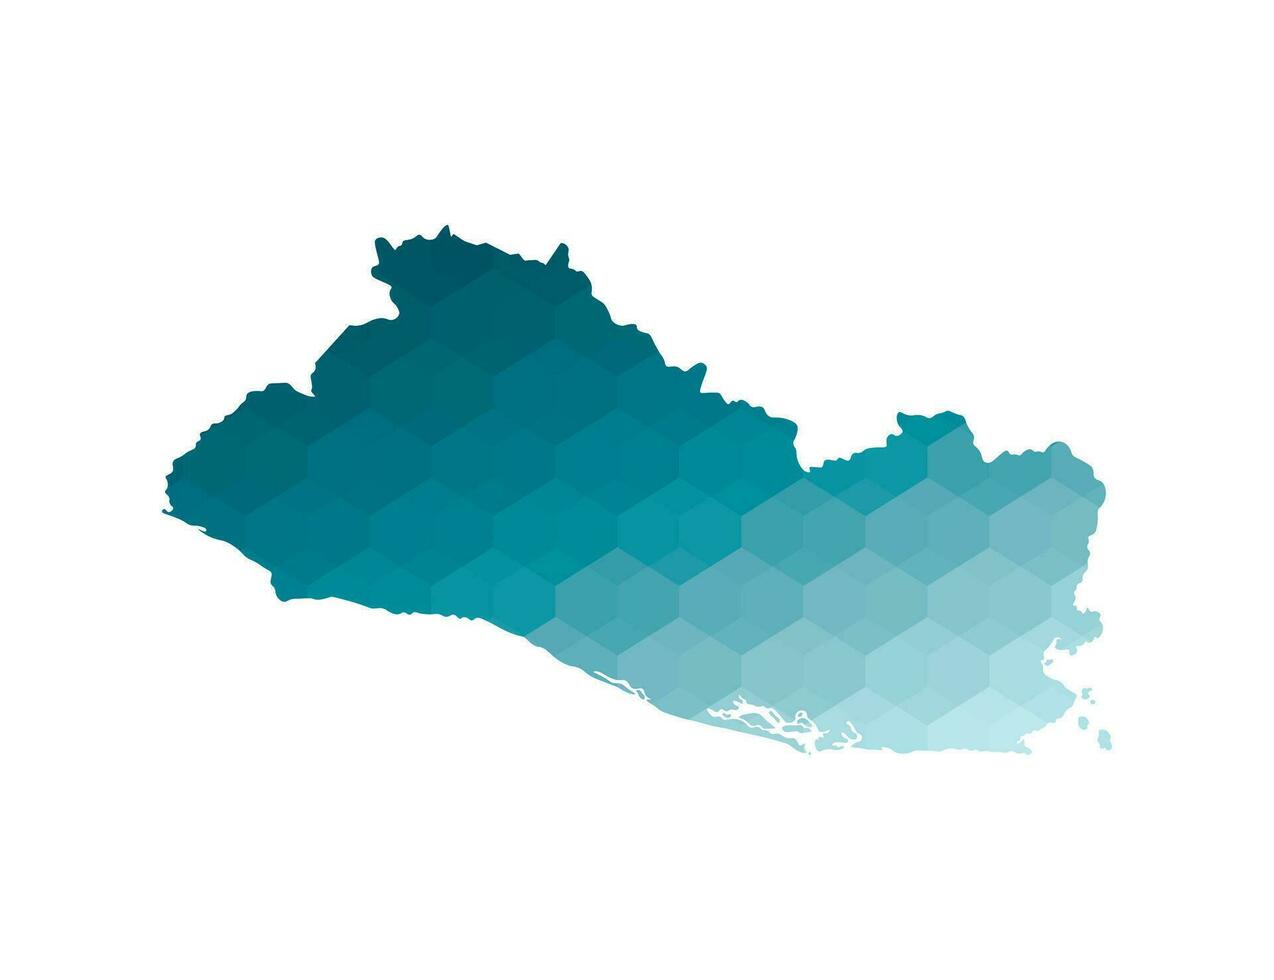 vetor isolado ilustração ícone com simplificado azul silhueta do el salvador mapa. poligonal geométrico estilo. branco fundo.